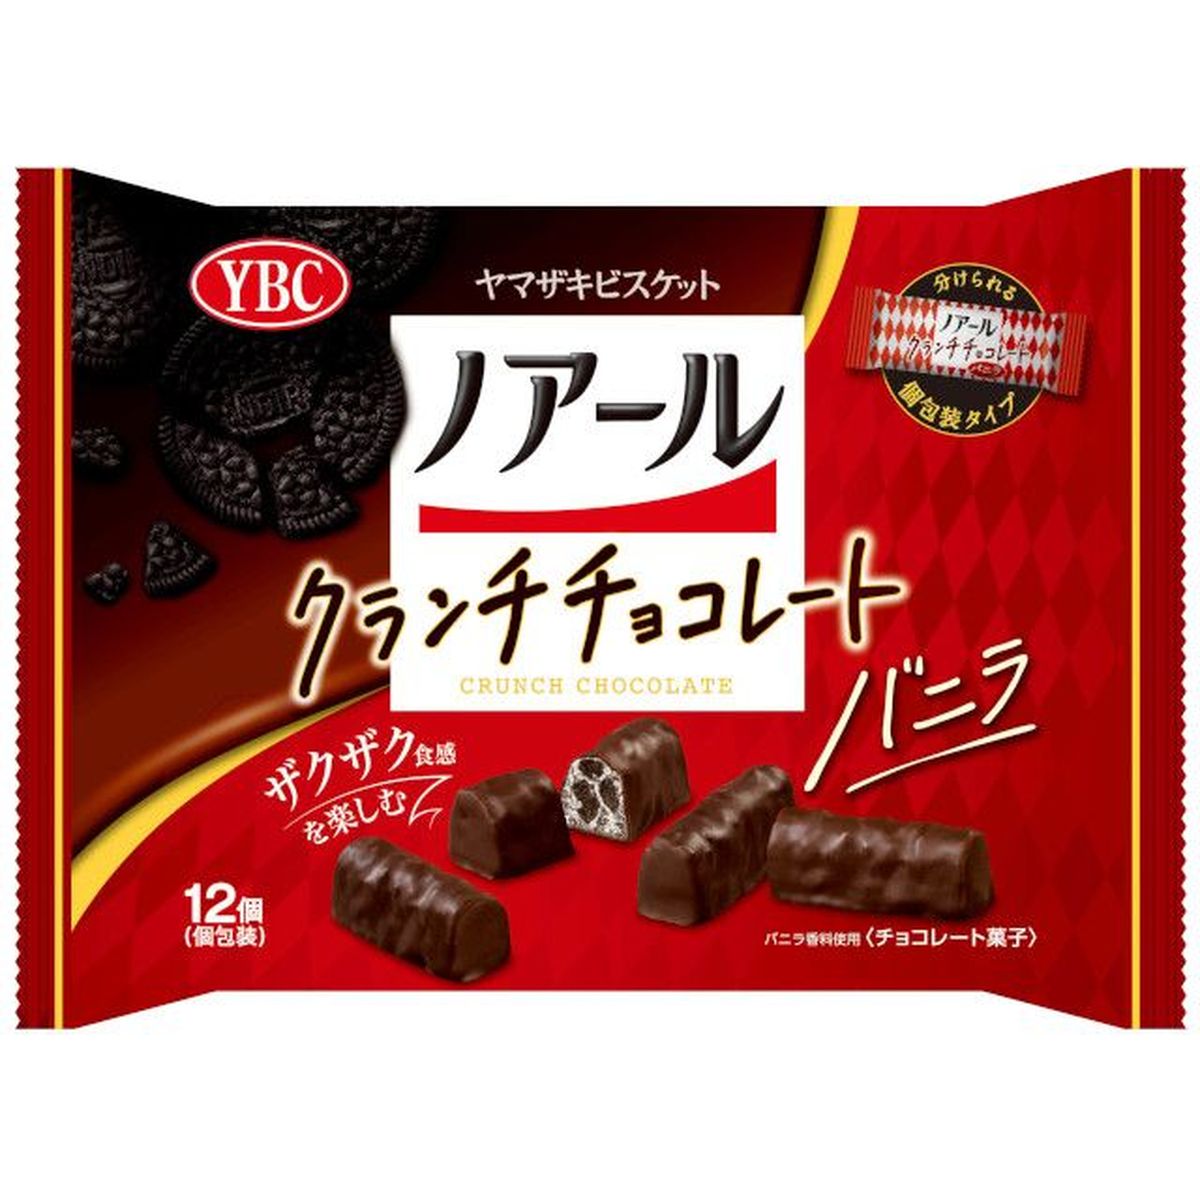 【12個入リ】ヤマザキビスケット ノアール クランチチョコレート バニラ 12個